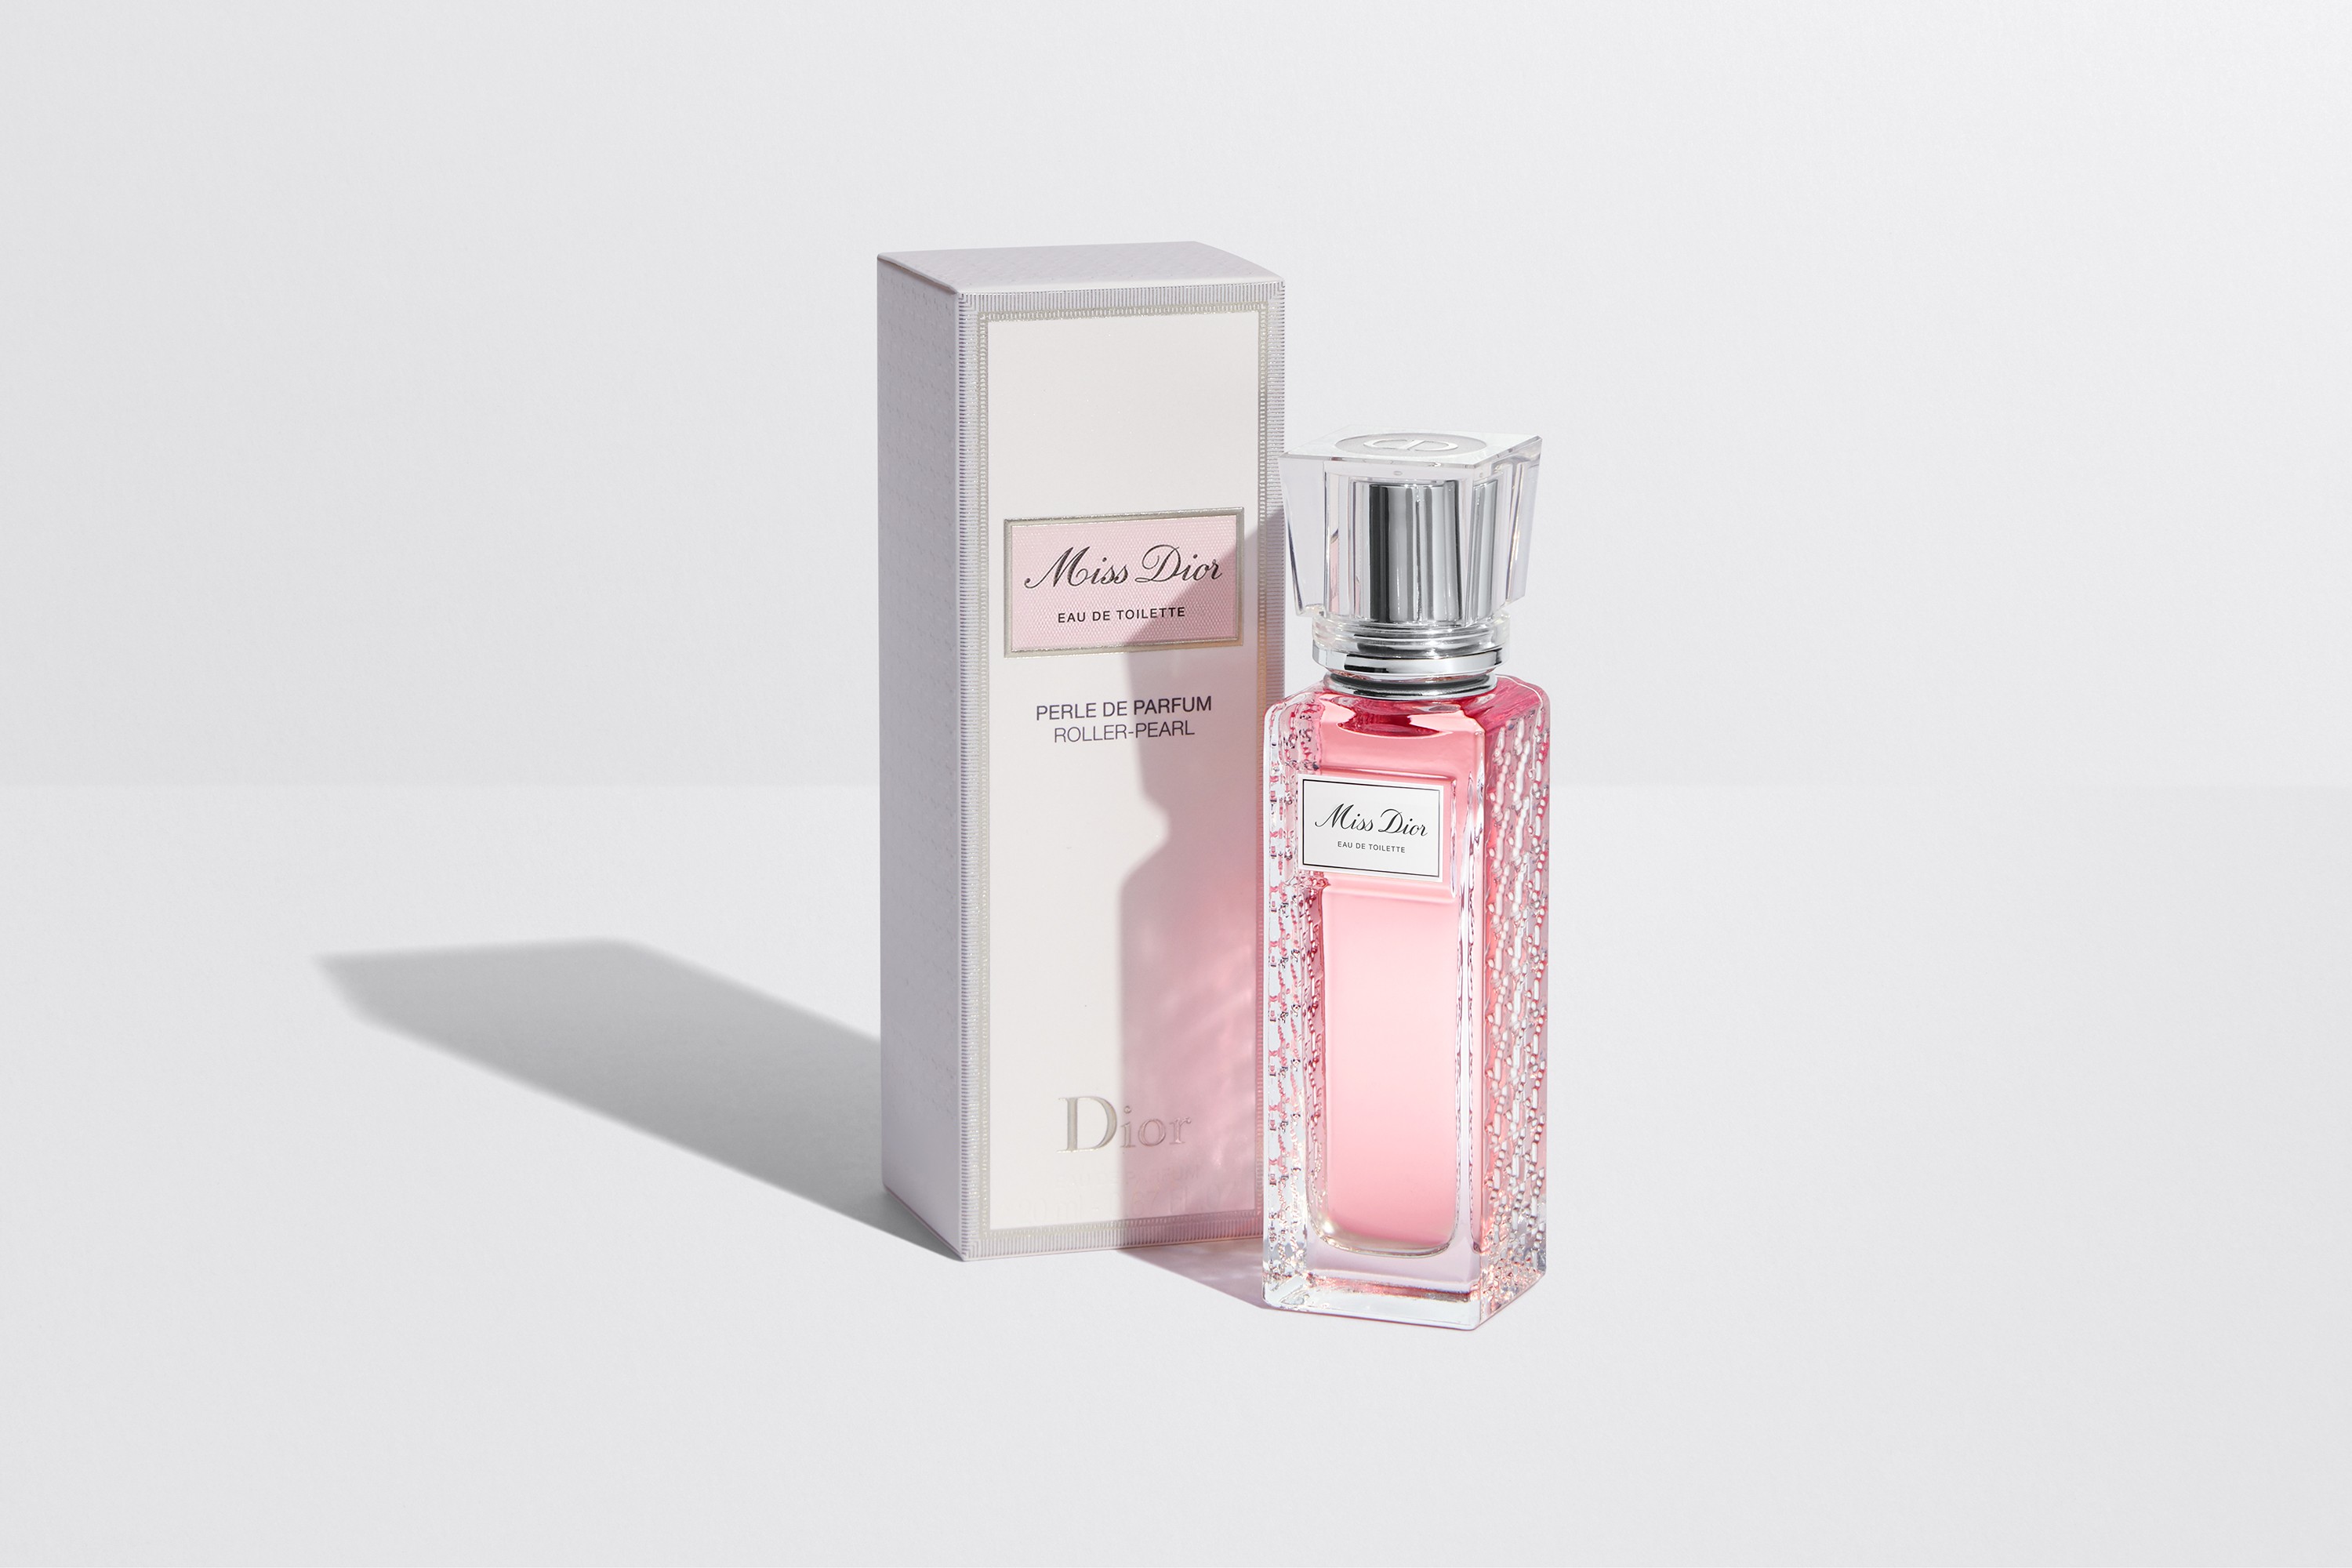 Miss Dior Eau de Toilette Roller Pearl 2019 Christian Dior perfume - a